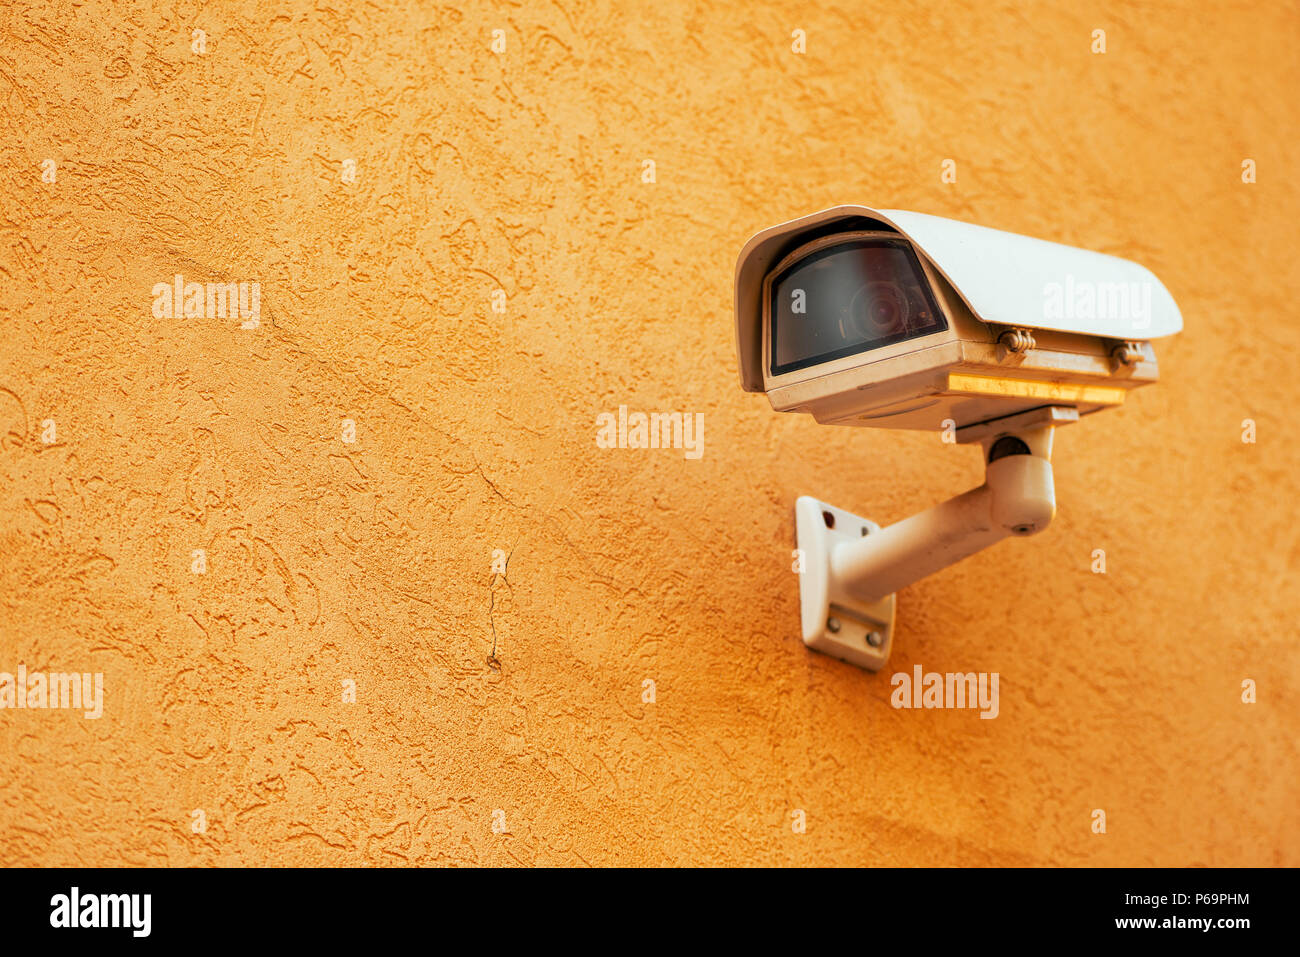 Suivi, surveillance CCTV extérieur caméra de sécurité avec copie espace Banque D'Images